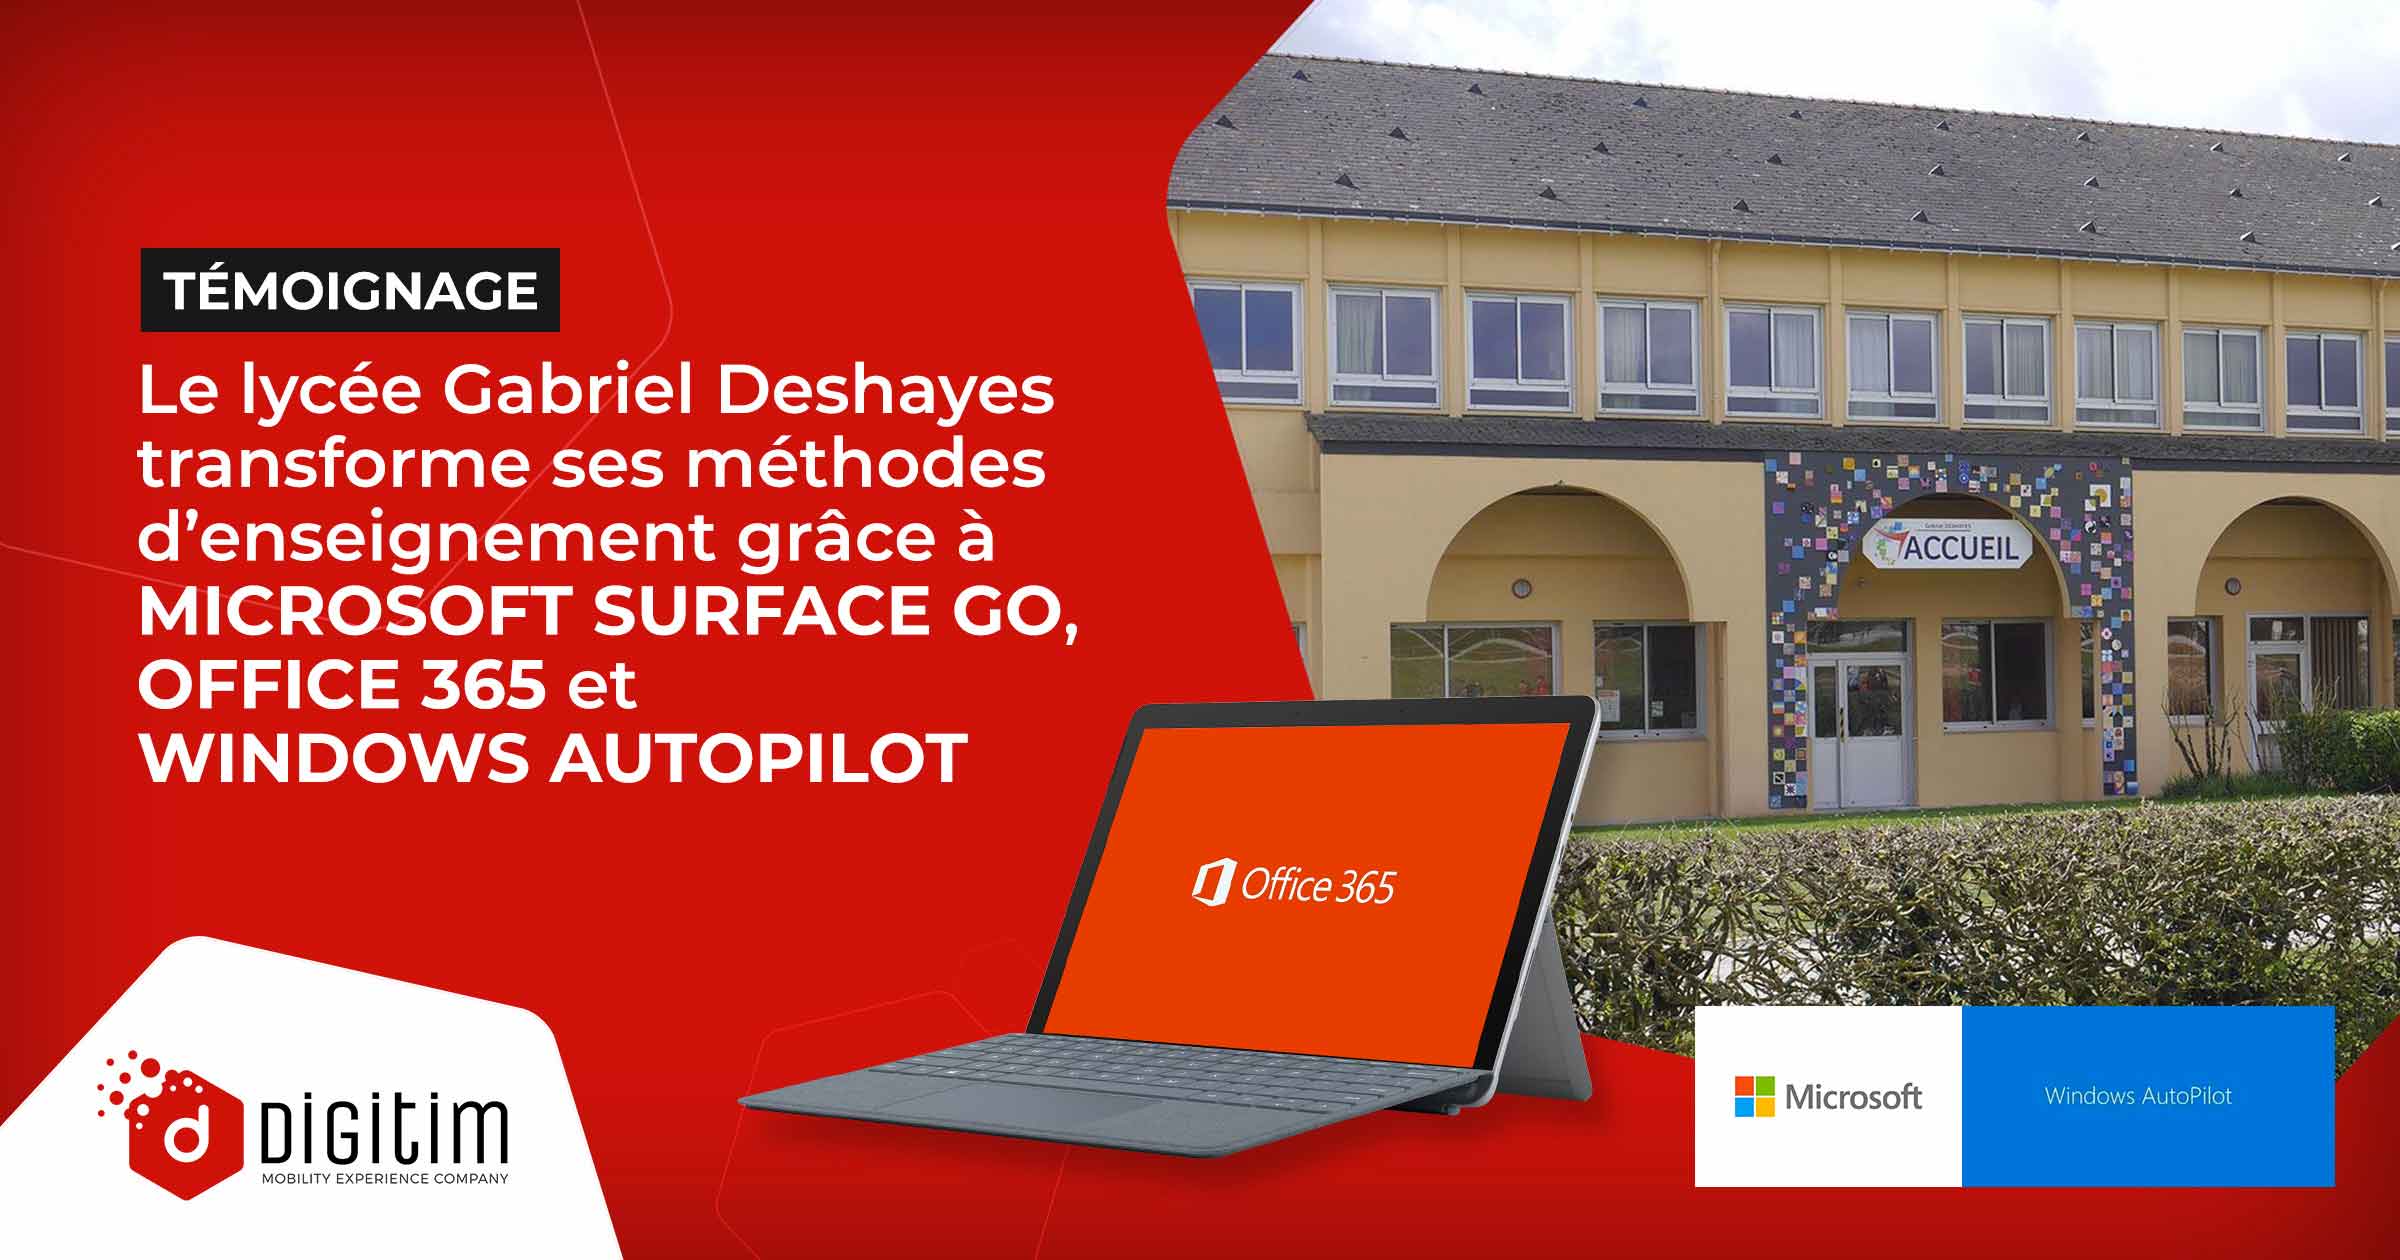 Lycée Gabriel transforme ses méthodes d'enseignement grâce à Microsoft  Surface Go, Office 365 et Windows Autopilot - Digitim